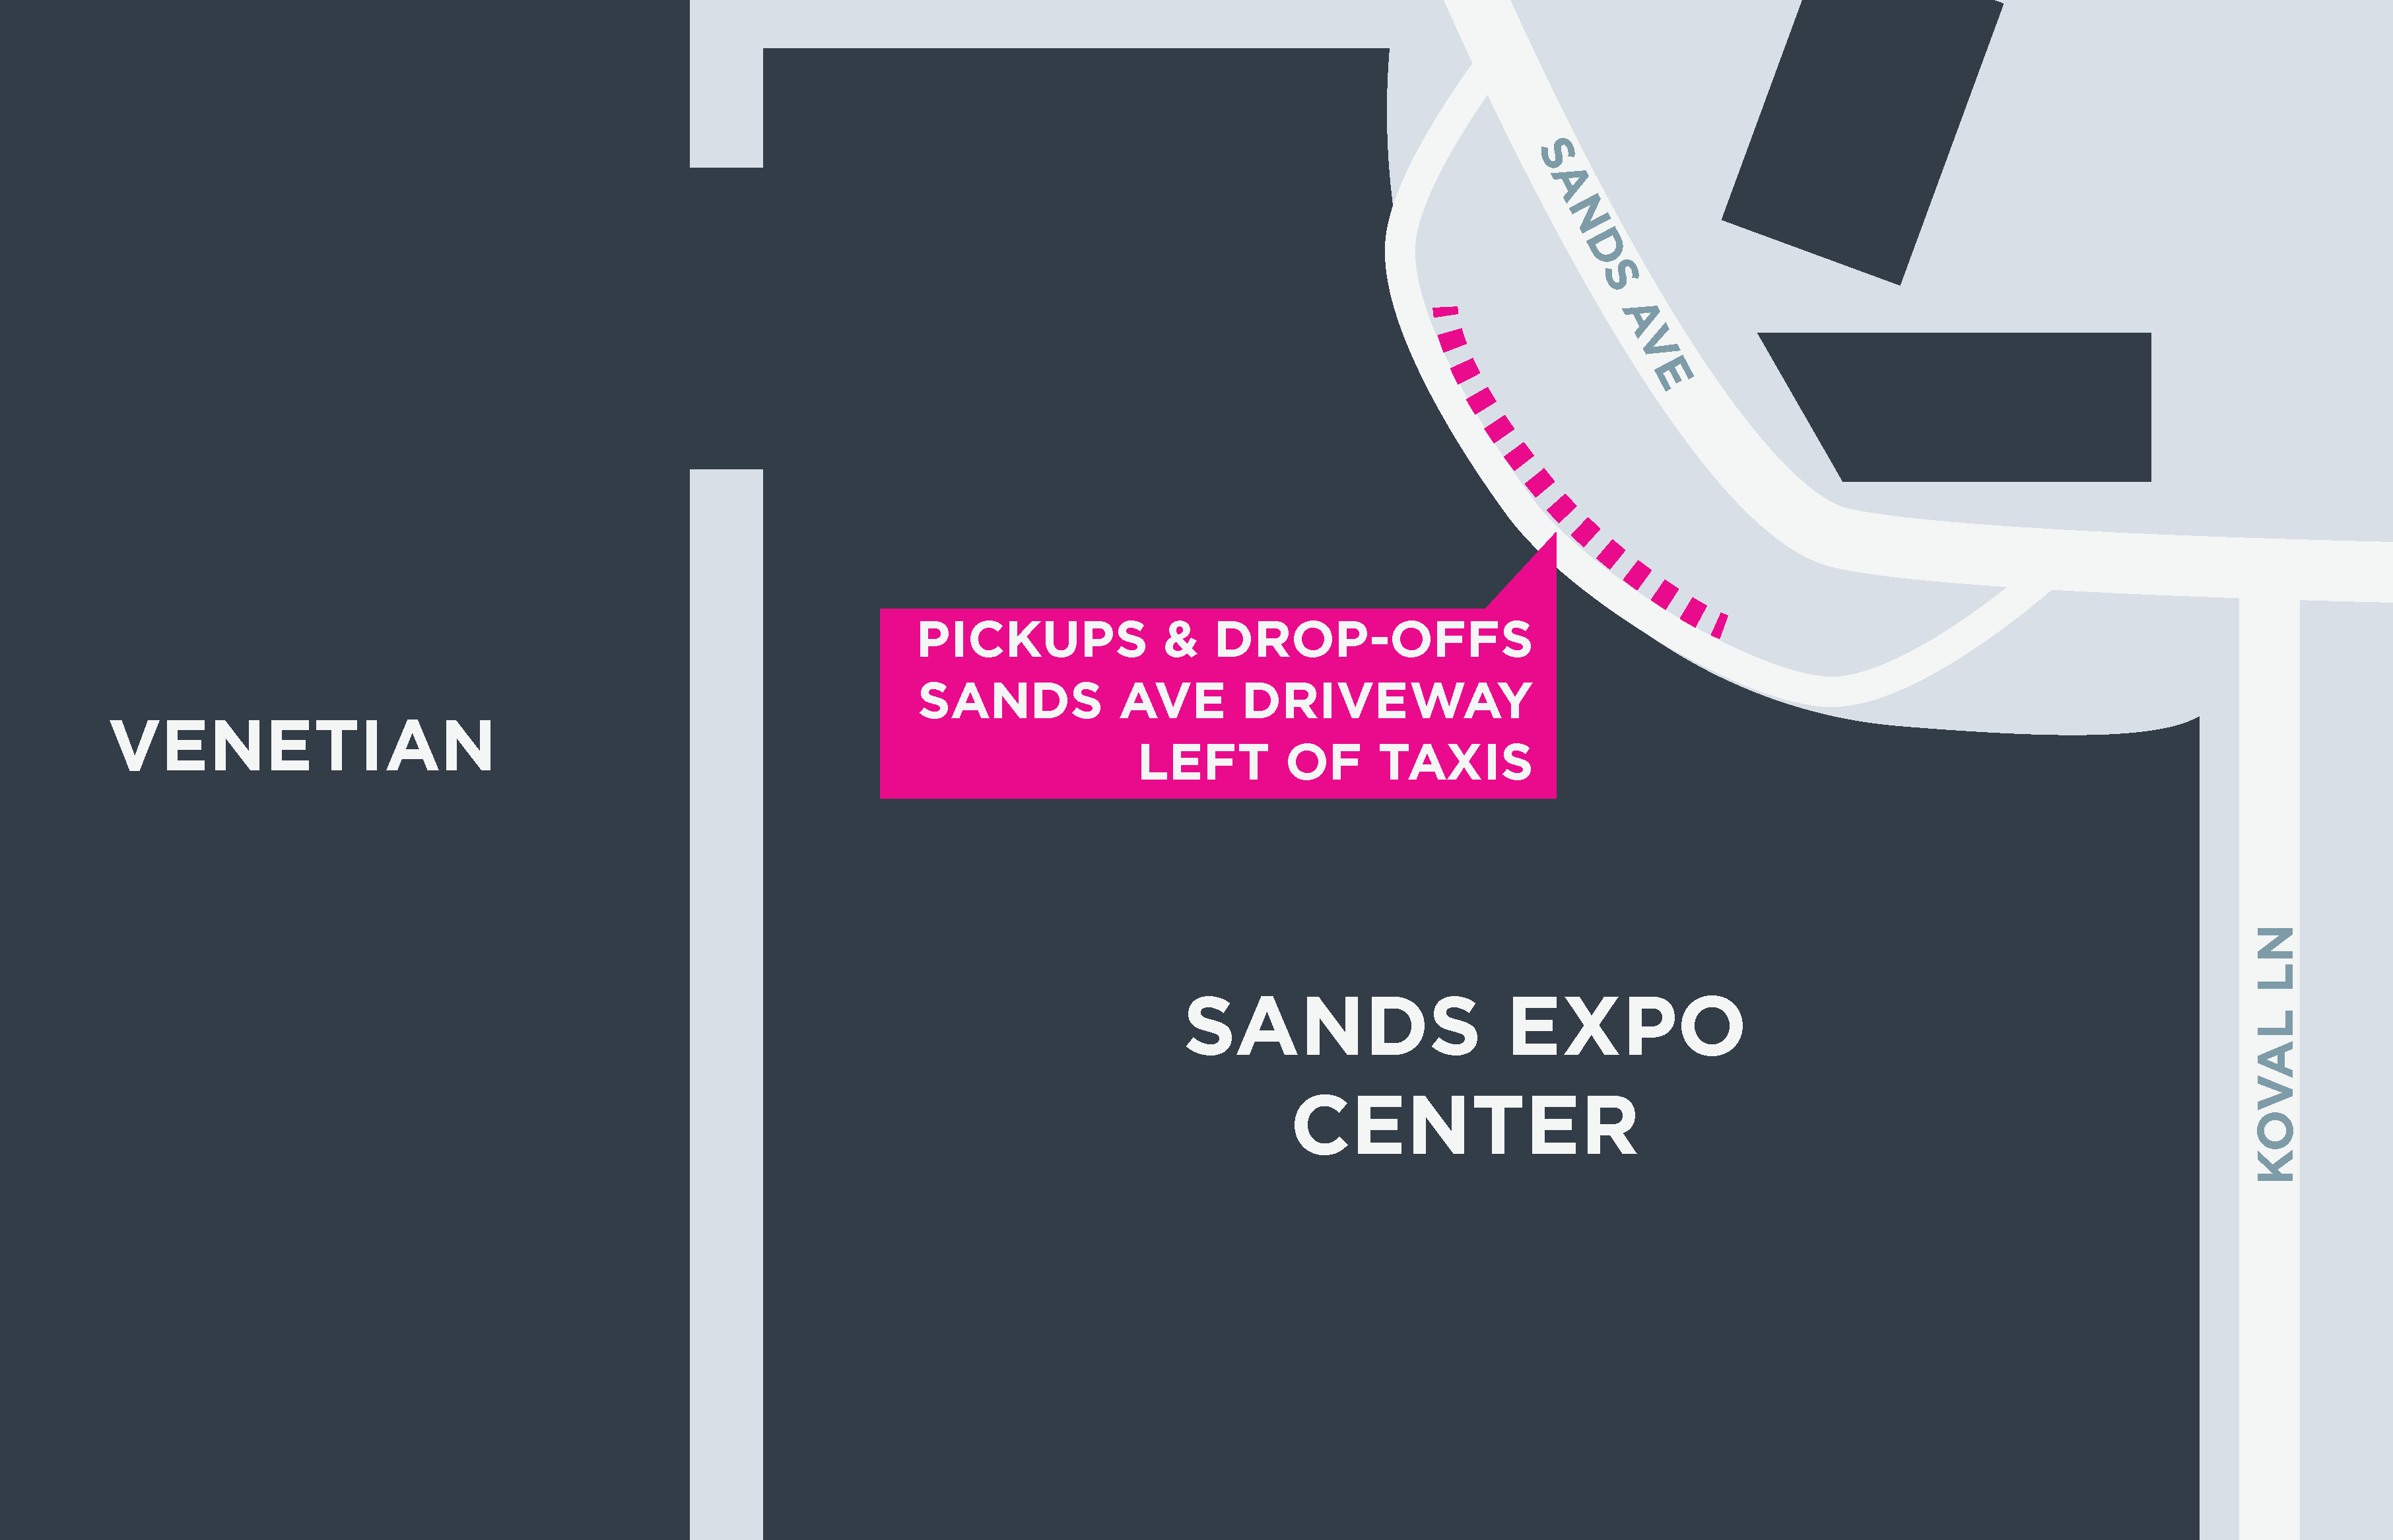 Esta imagen muestra un mapa de Sands Expo, incluidas las áreas para recoger y dejar pasajeros.